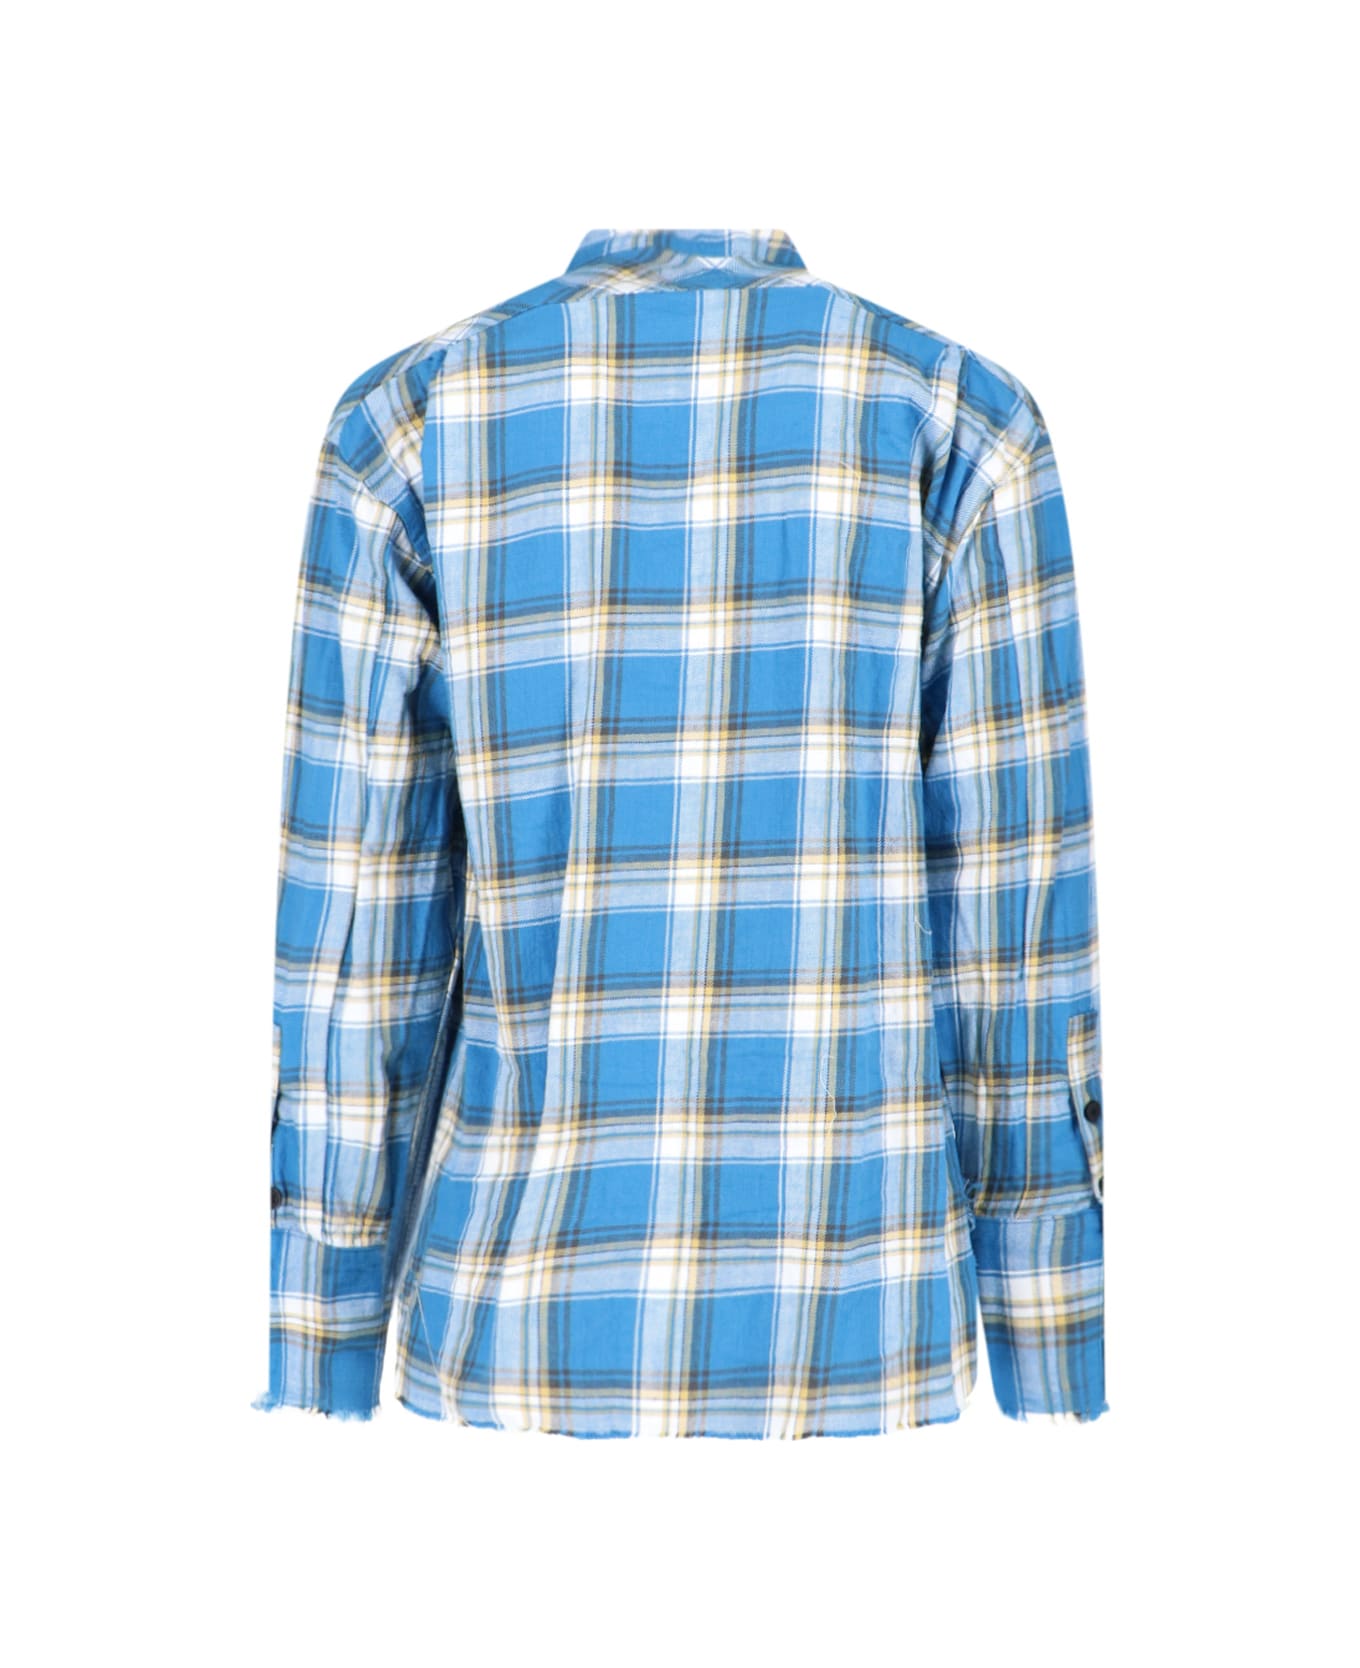 Greg Lauren Check Shirt - Light Blue